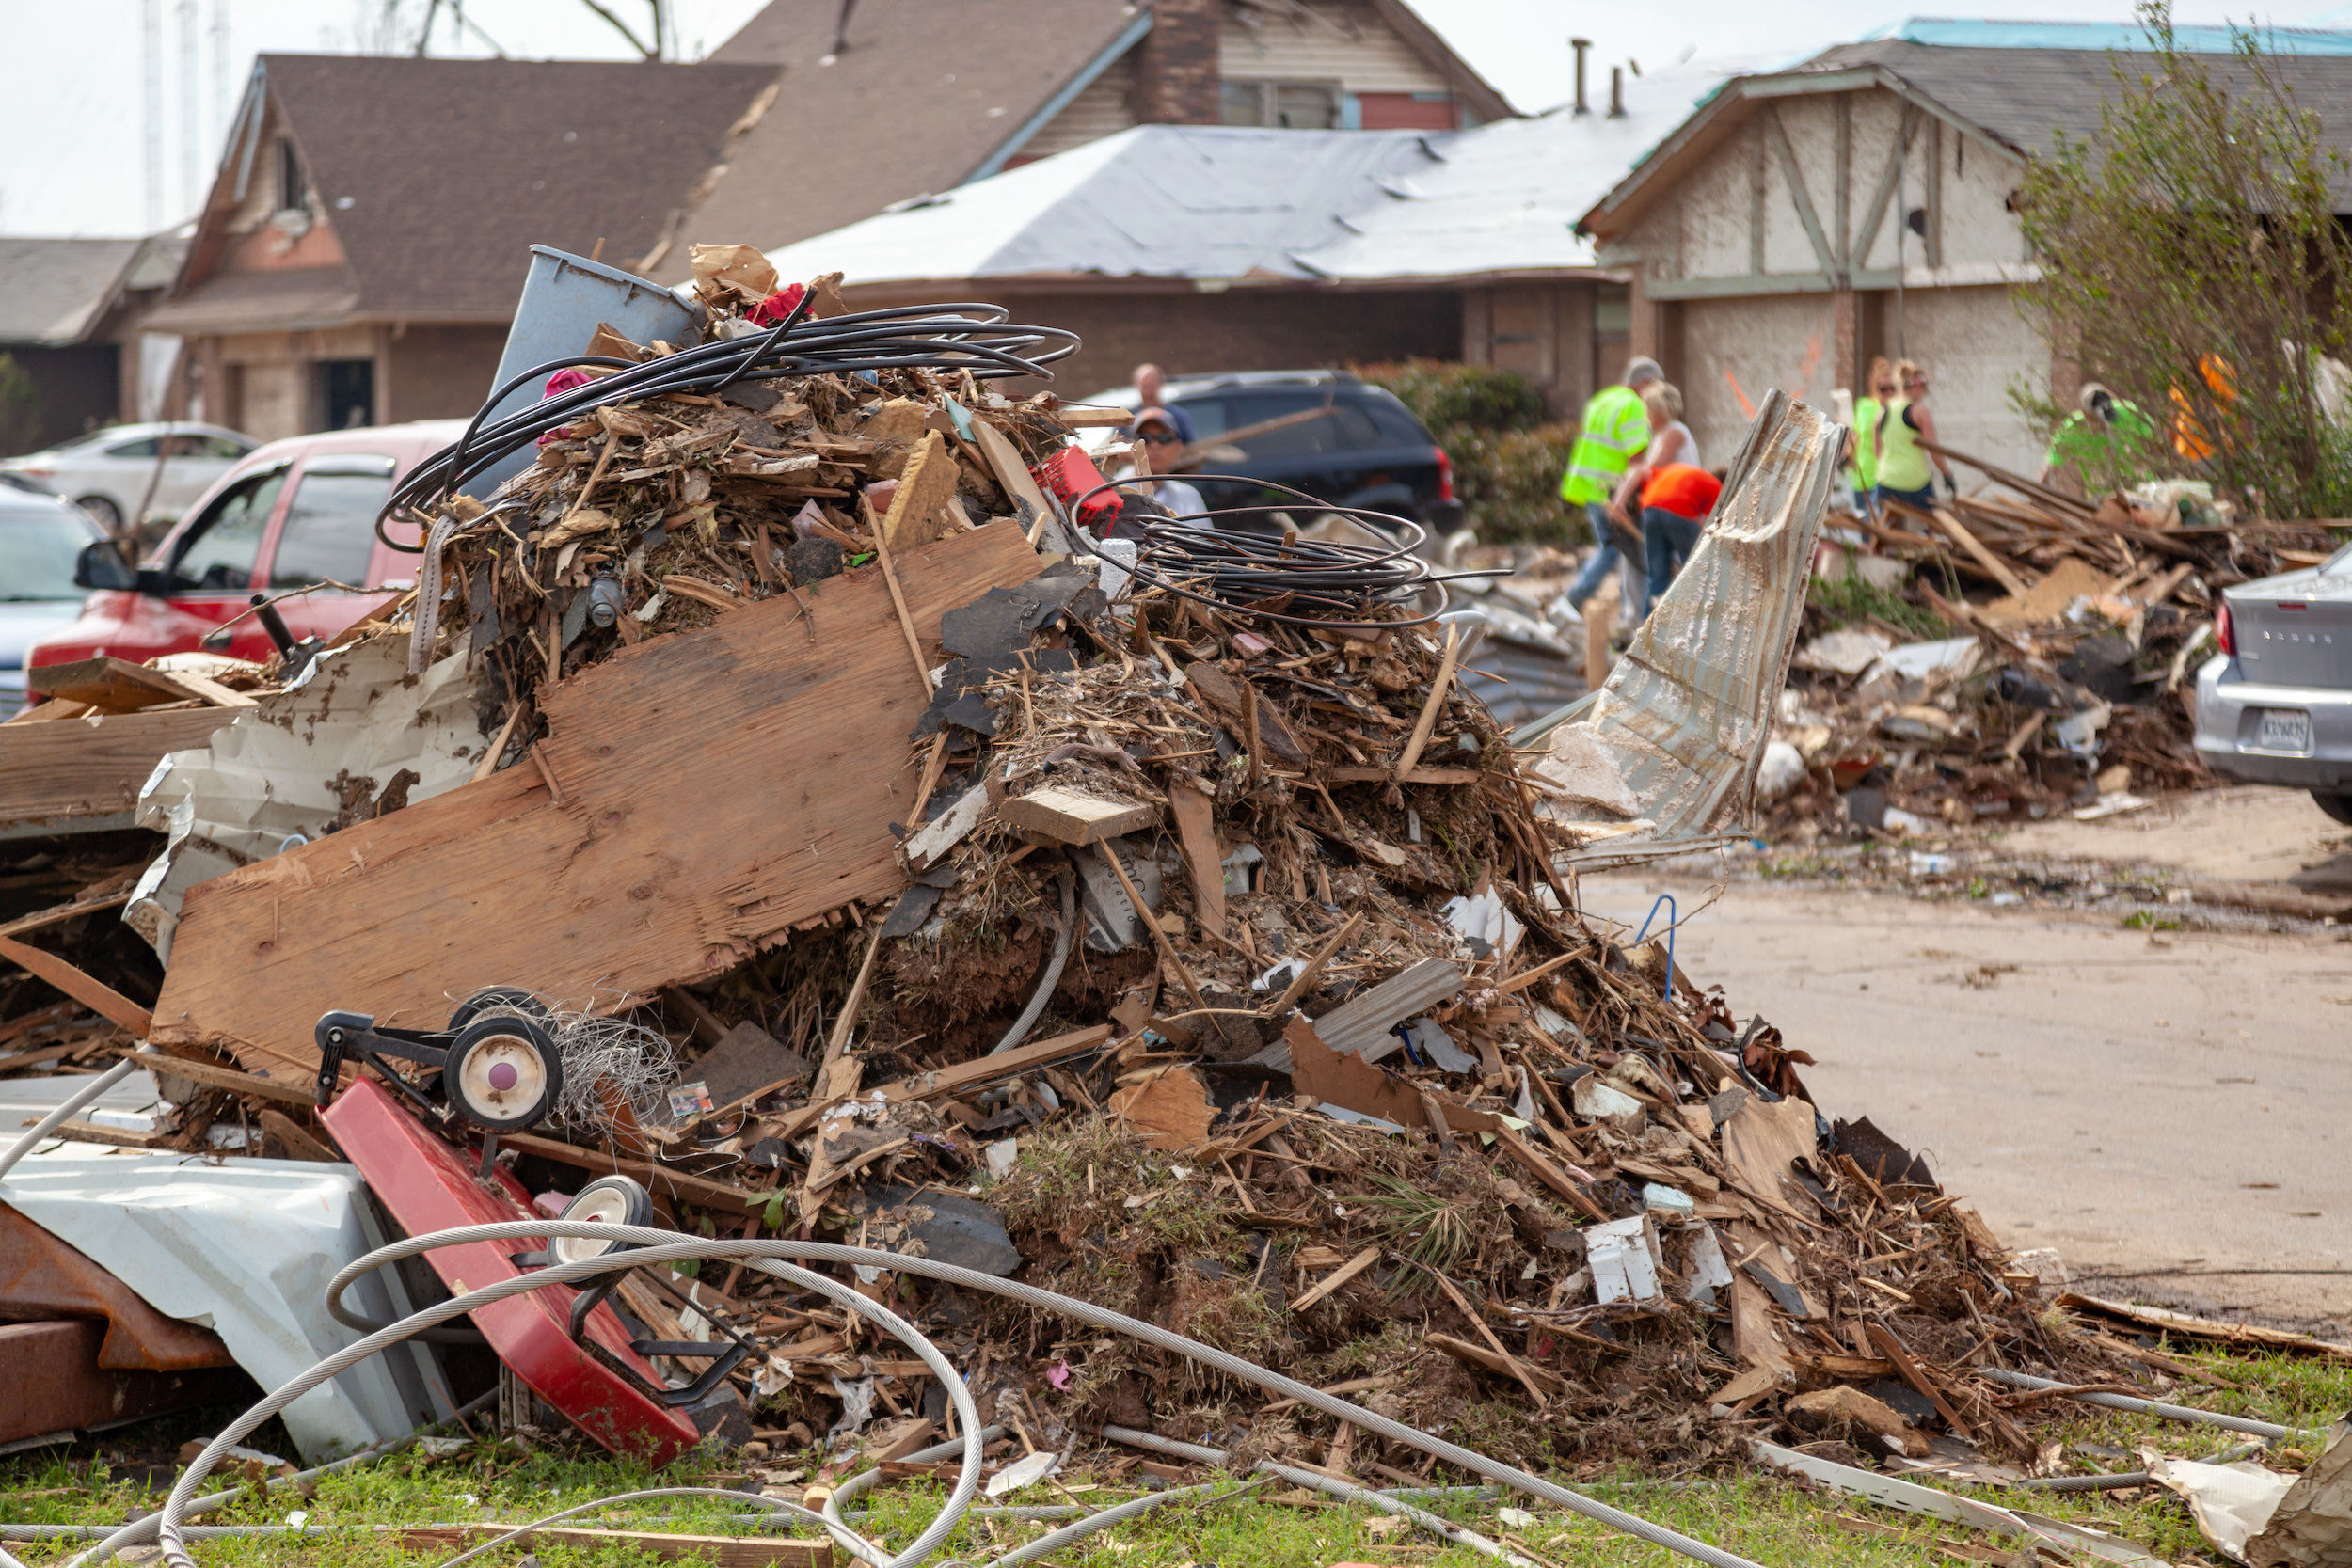 Debris Piled Up During Tornado Destruction Cleanup